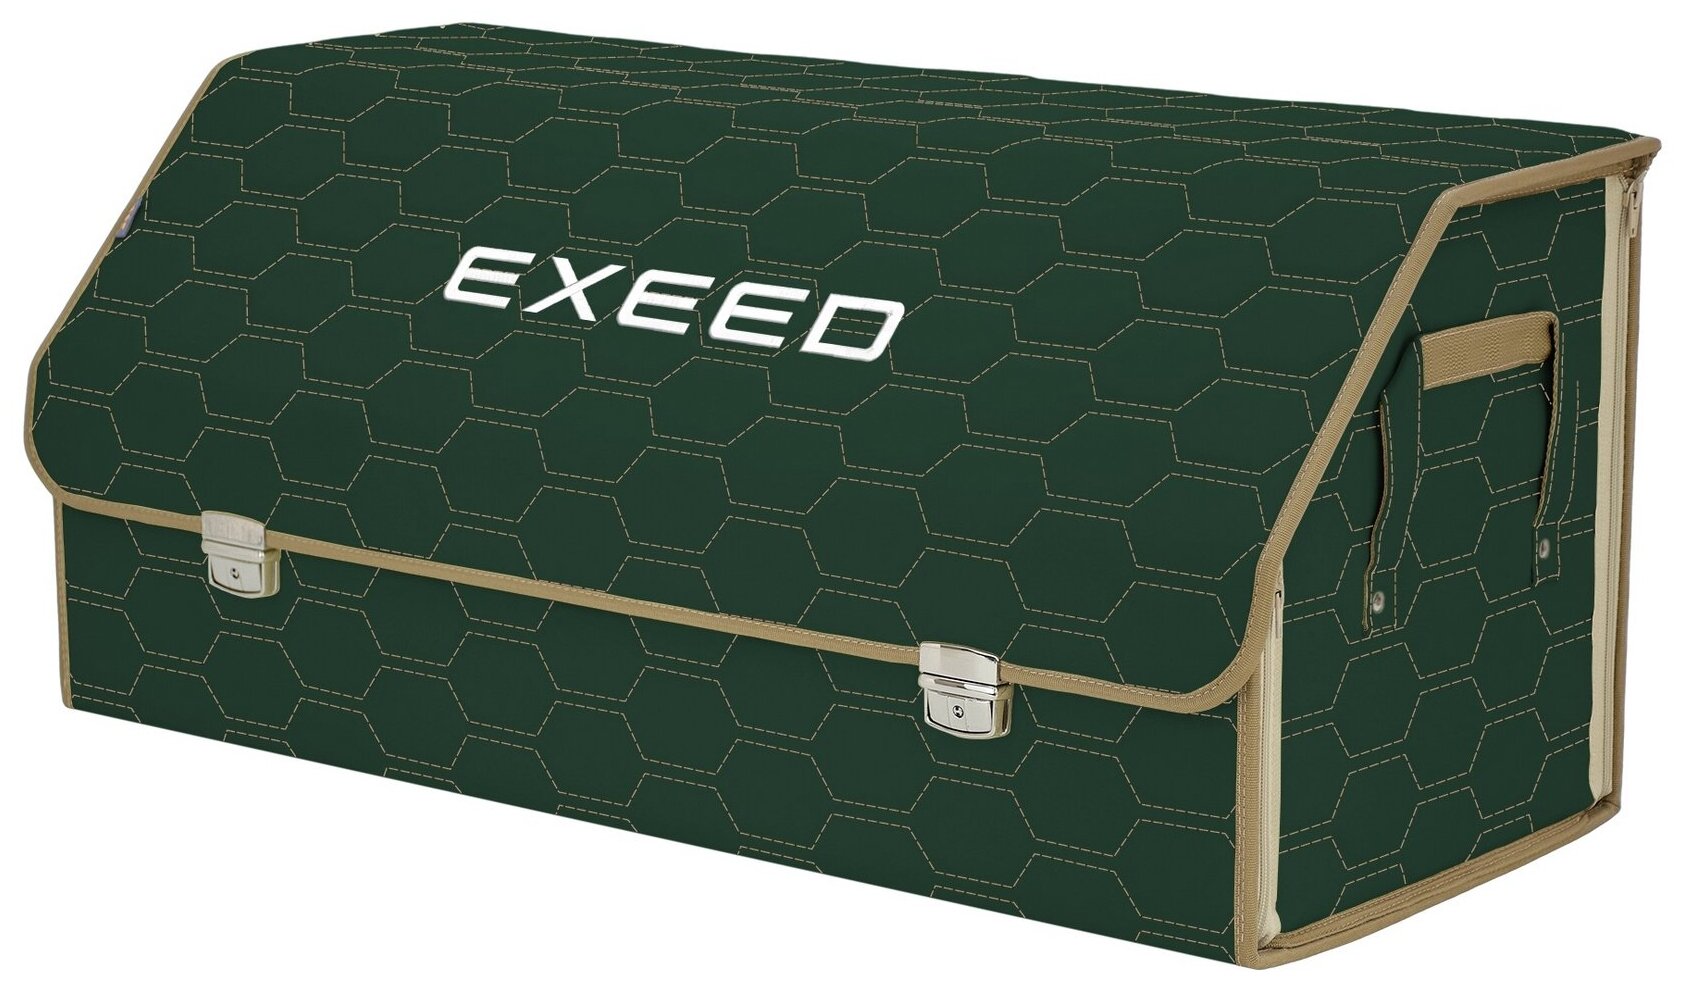 Органайзер-саквояж в багажник "Союз Премиум" (размер XXL). Цвет: зеленый с бежевой прострочкой Соты и вышивкой Exeed (Эксид).